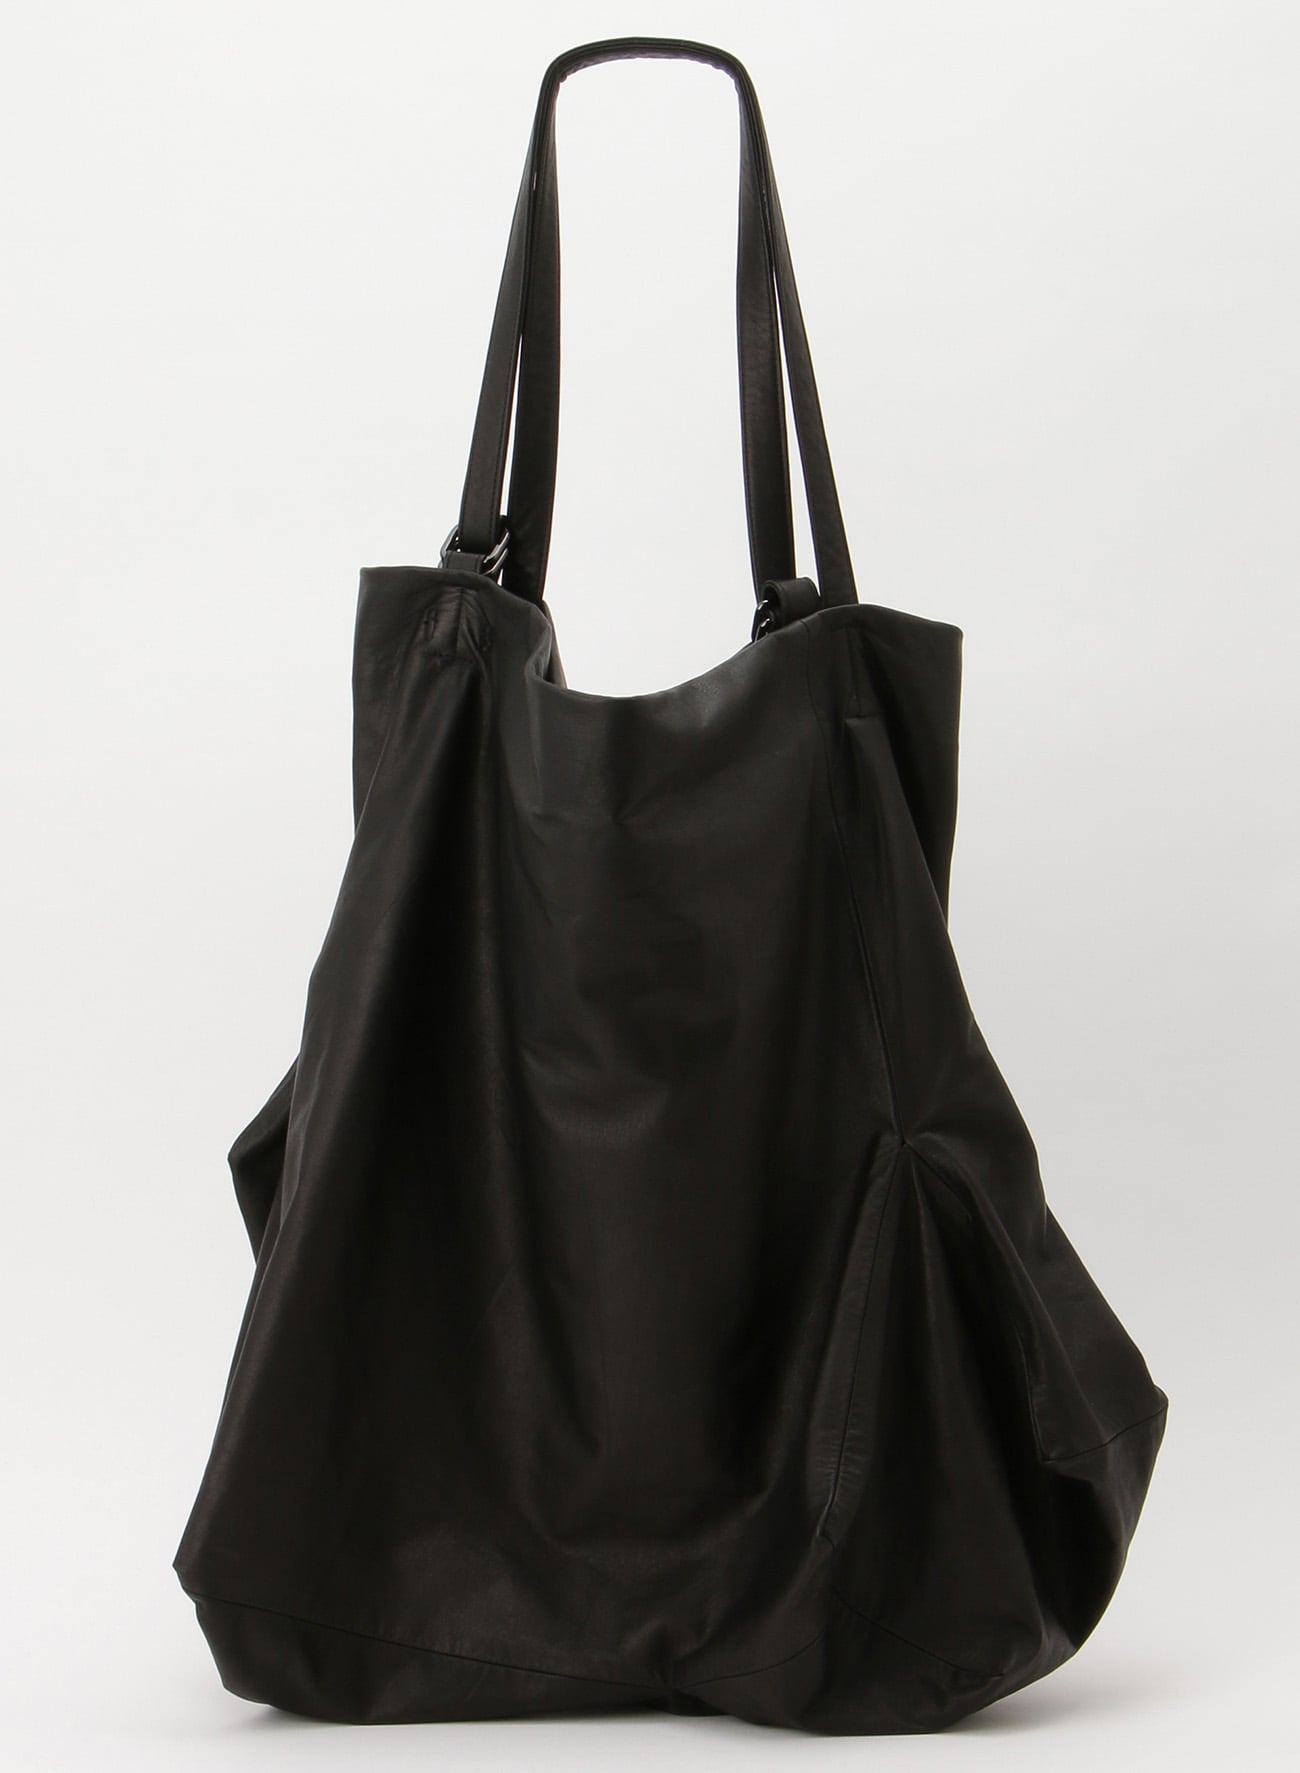 Unevenness tote(Leather)(FREE SIZE Black): discord Yohji Yamamoto 